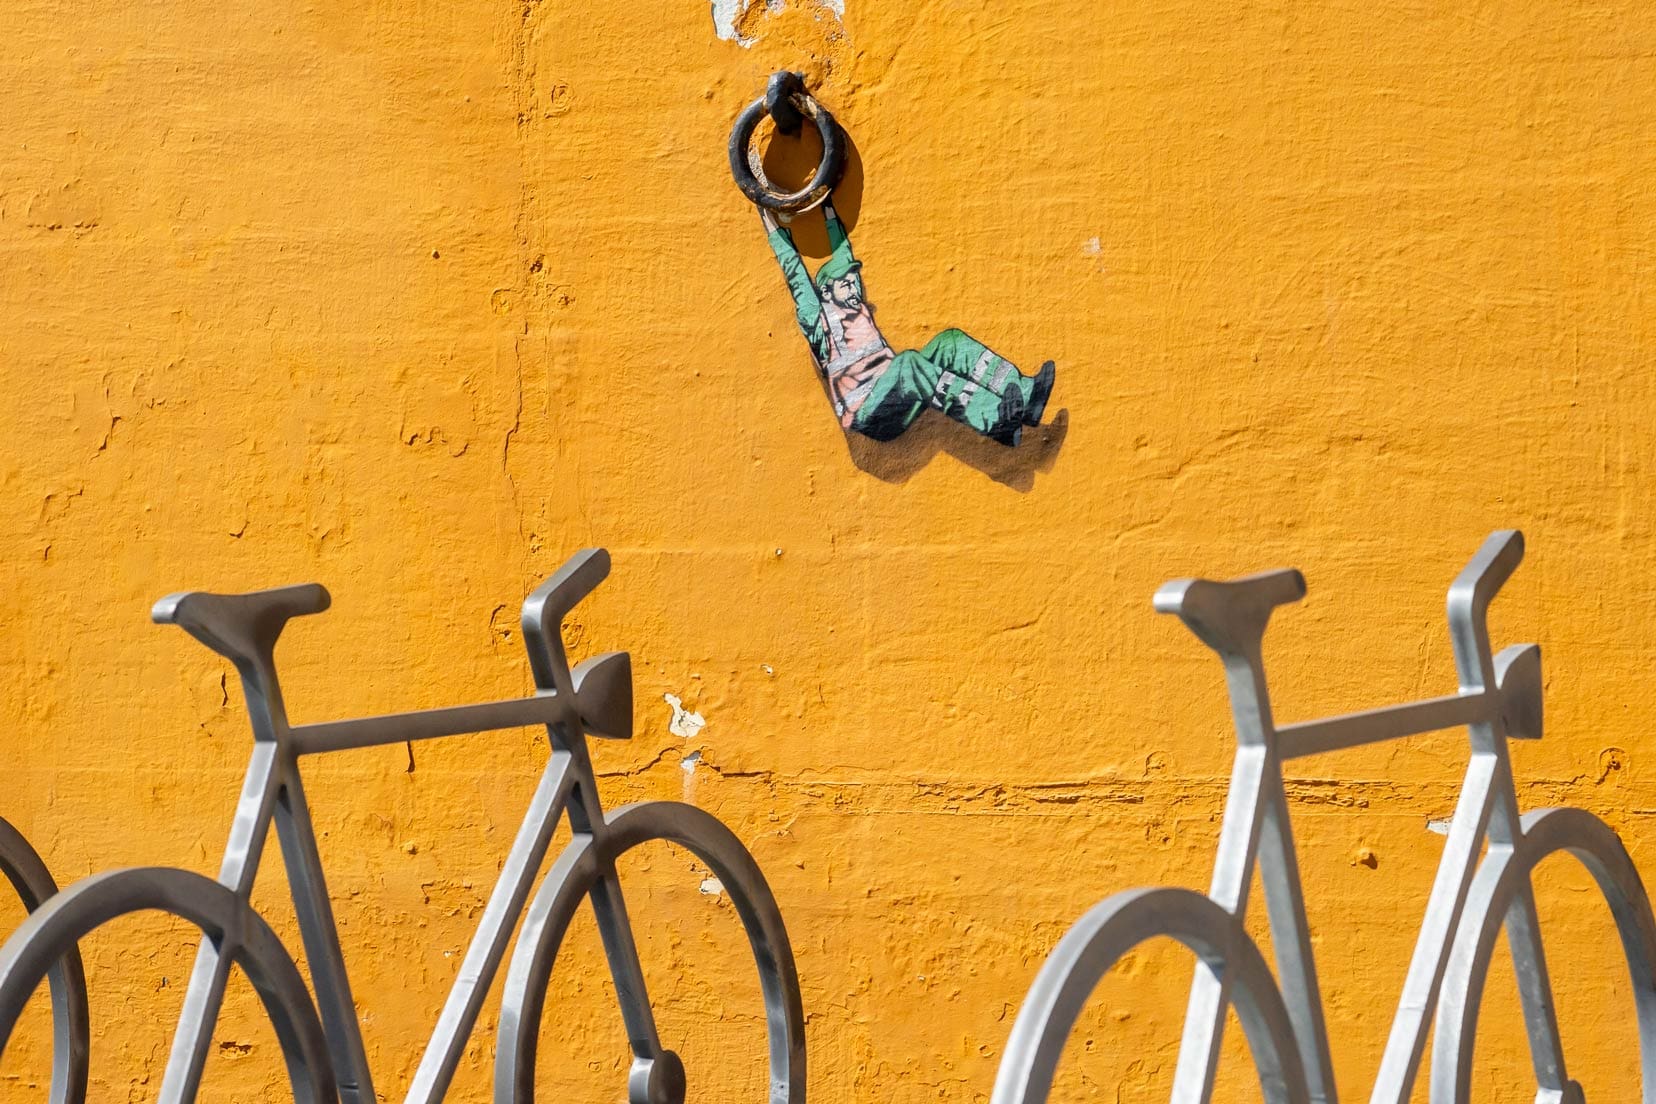 Stavanger-bike-and-mural